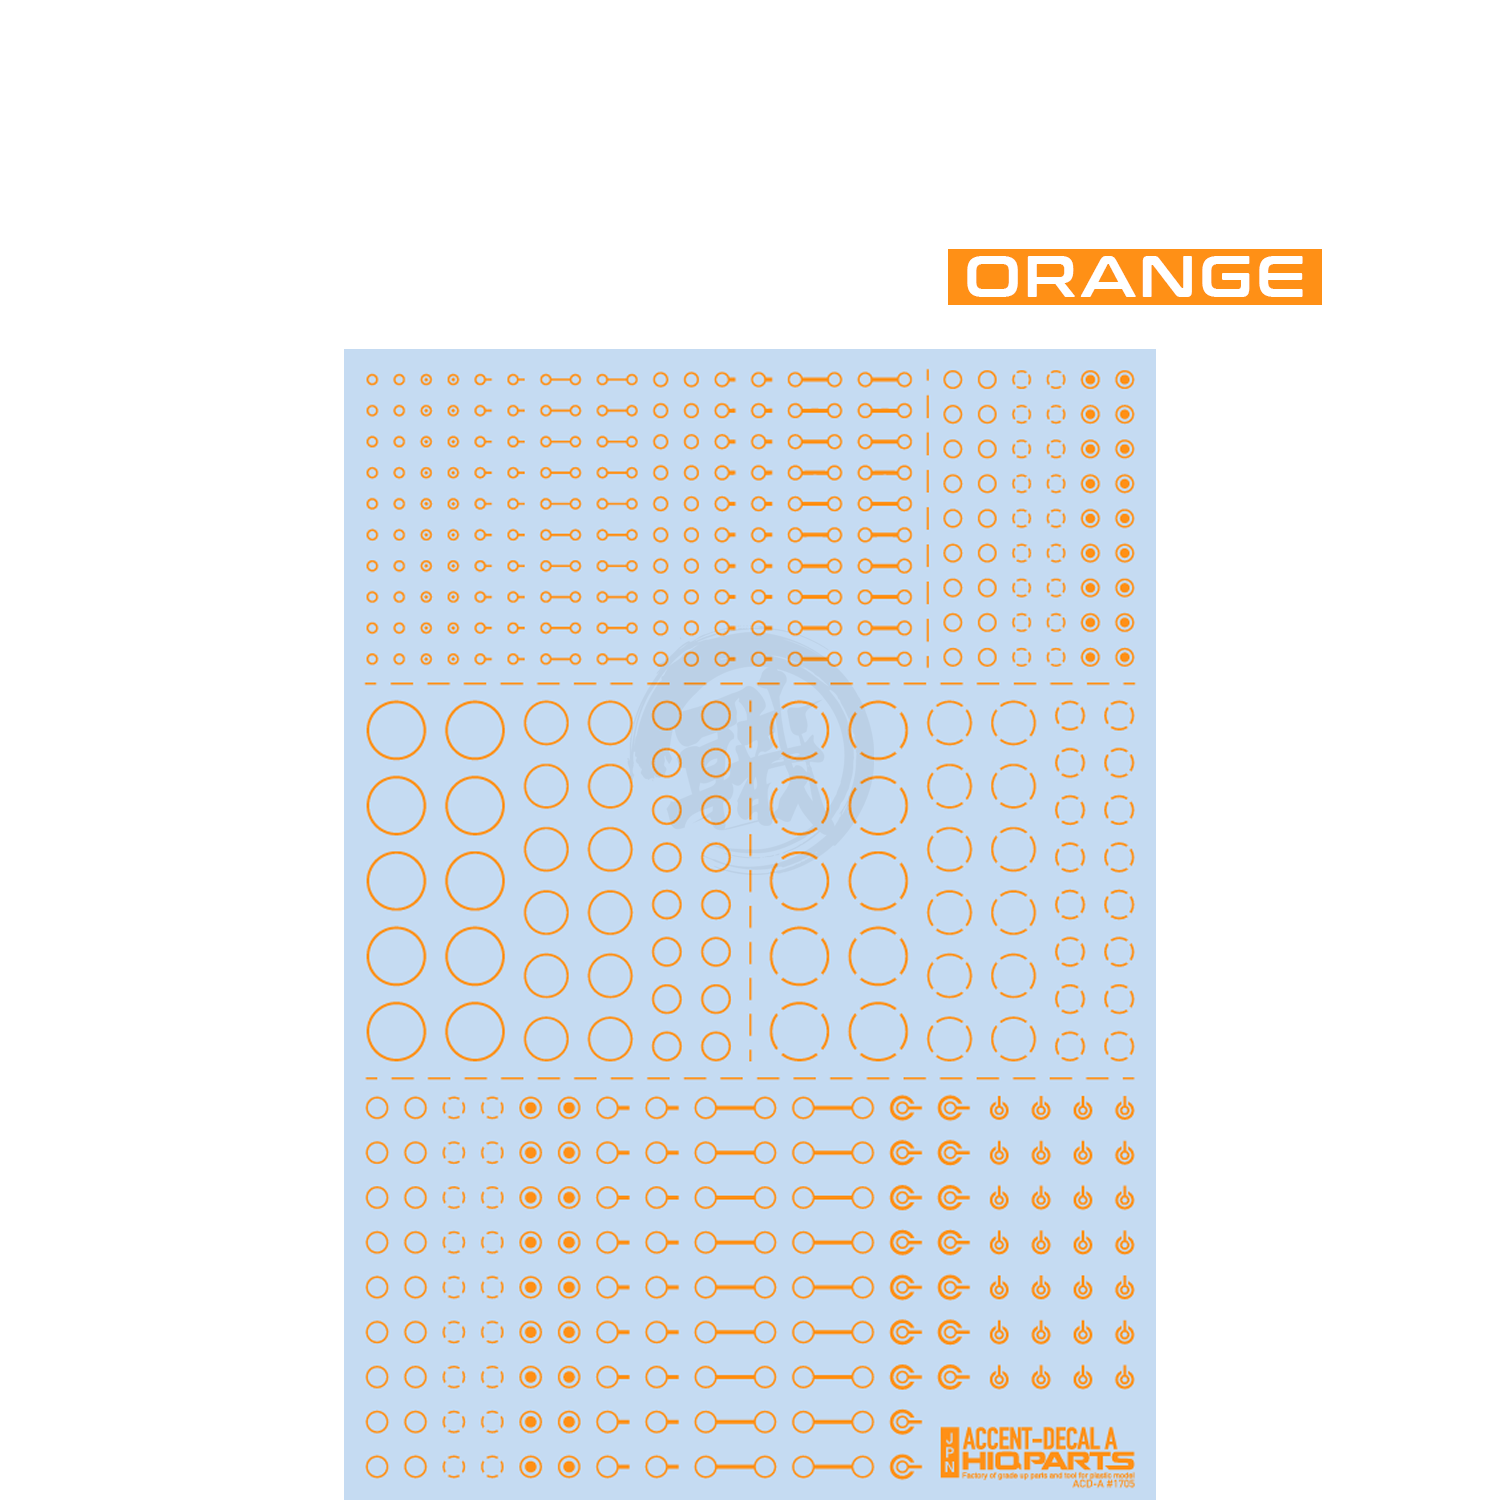 HIQParts - Accent Decal A [Orange] - ShokuninGunpla